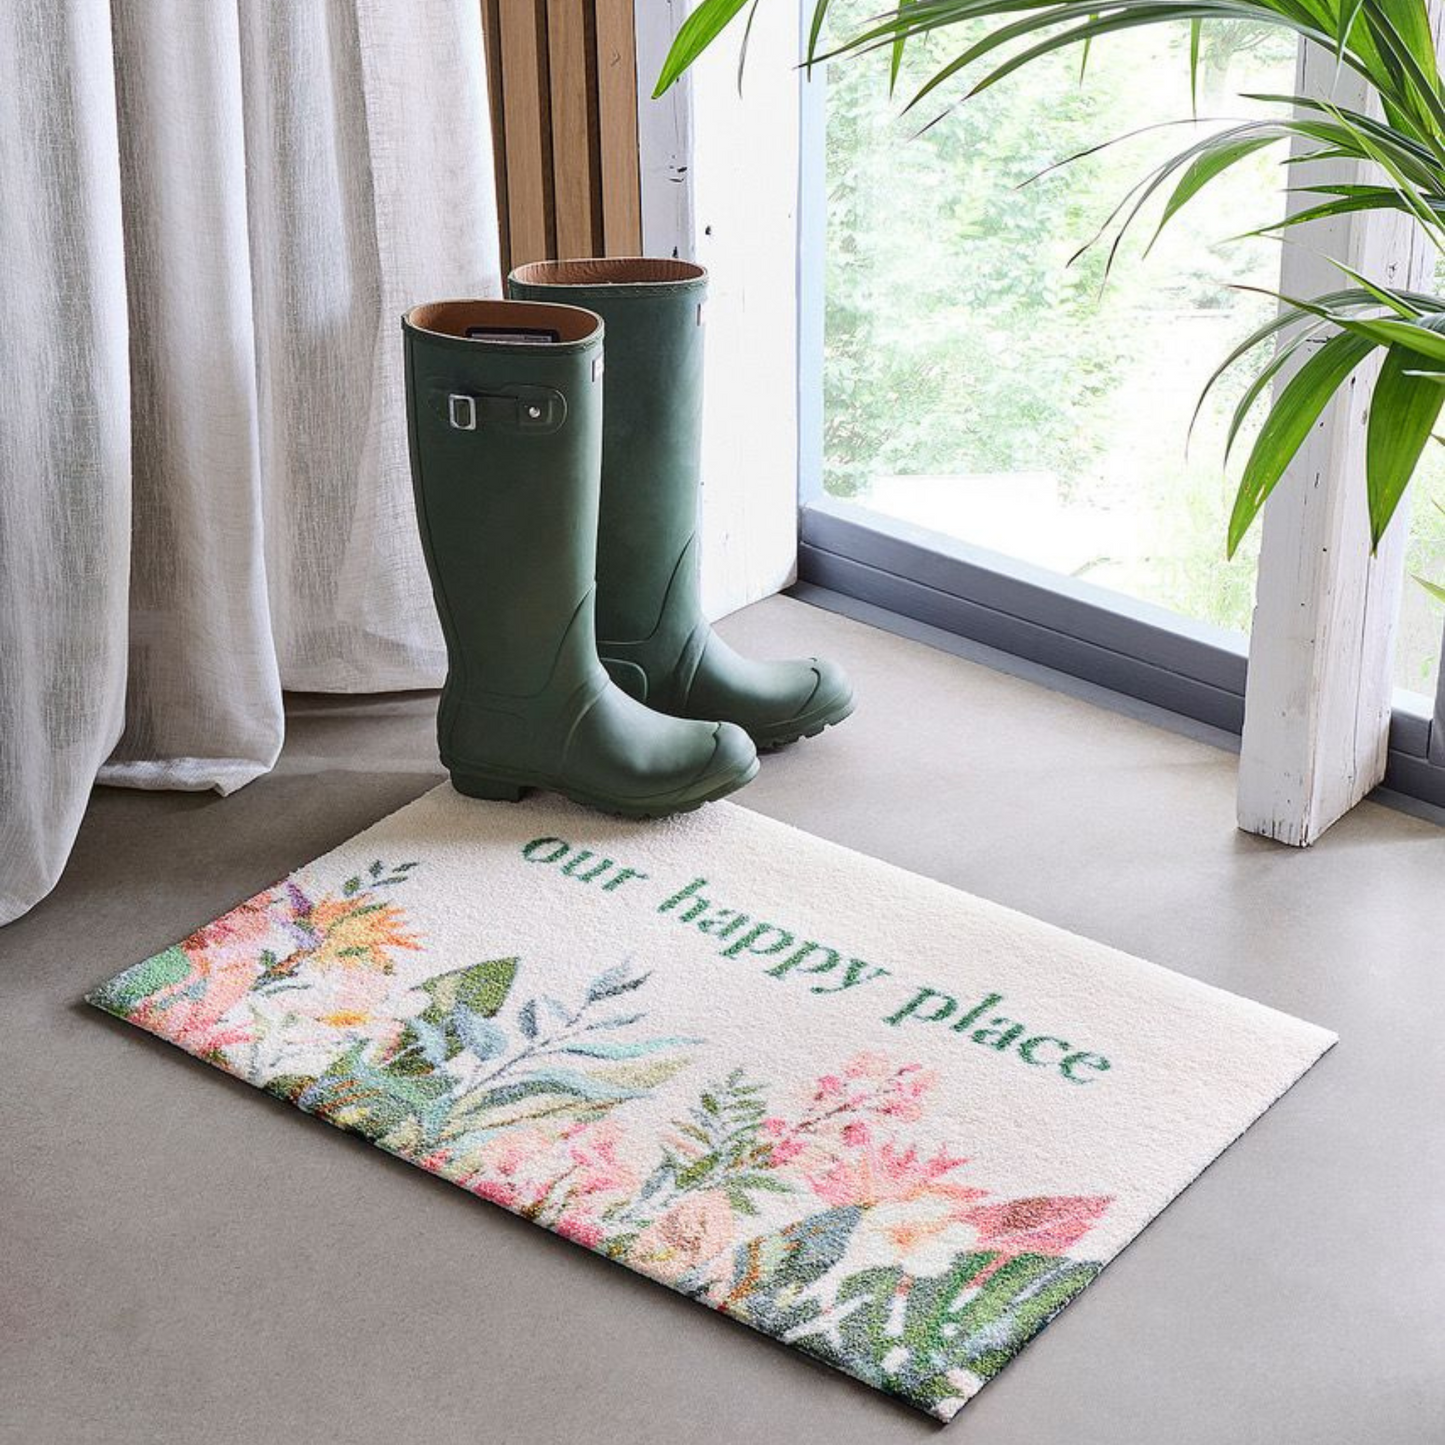 Happy Garden Personalised Doormat